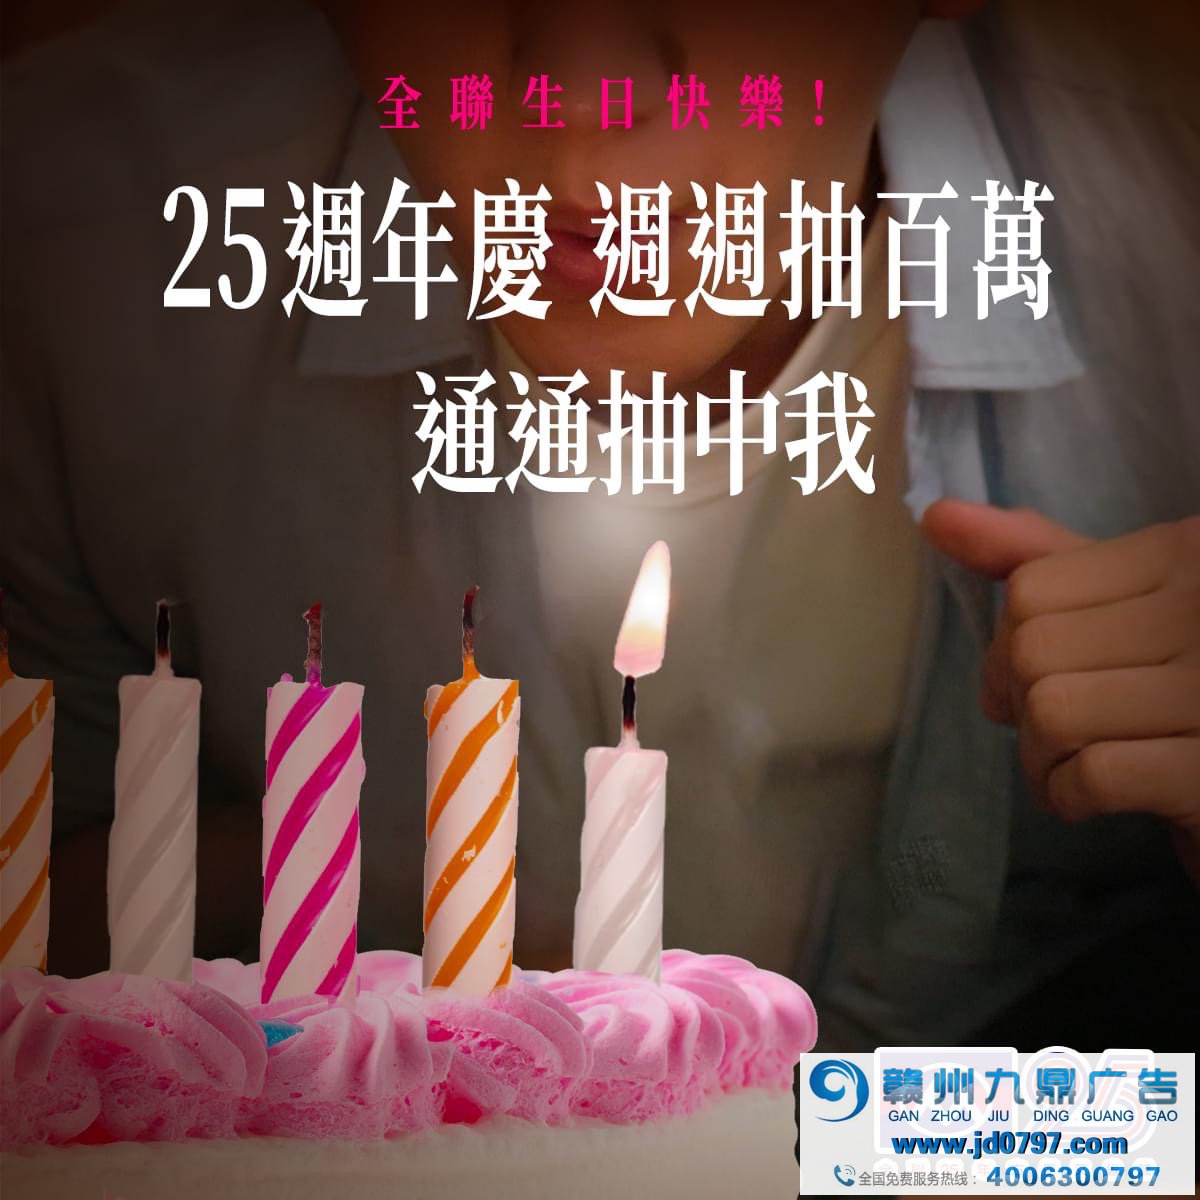 全联庆祝25岁生日，许了25个百万愿望